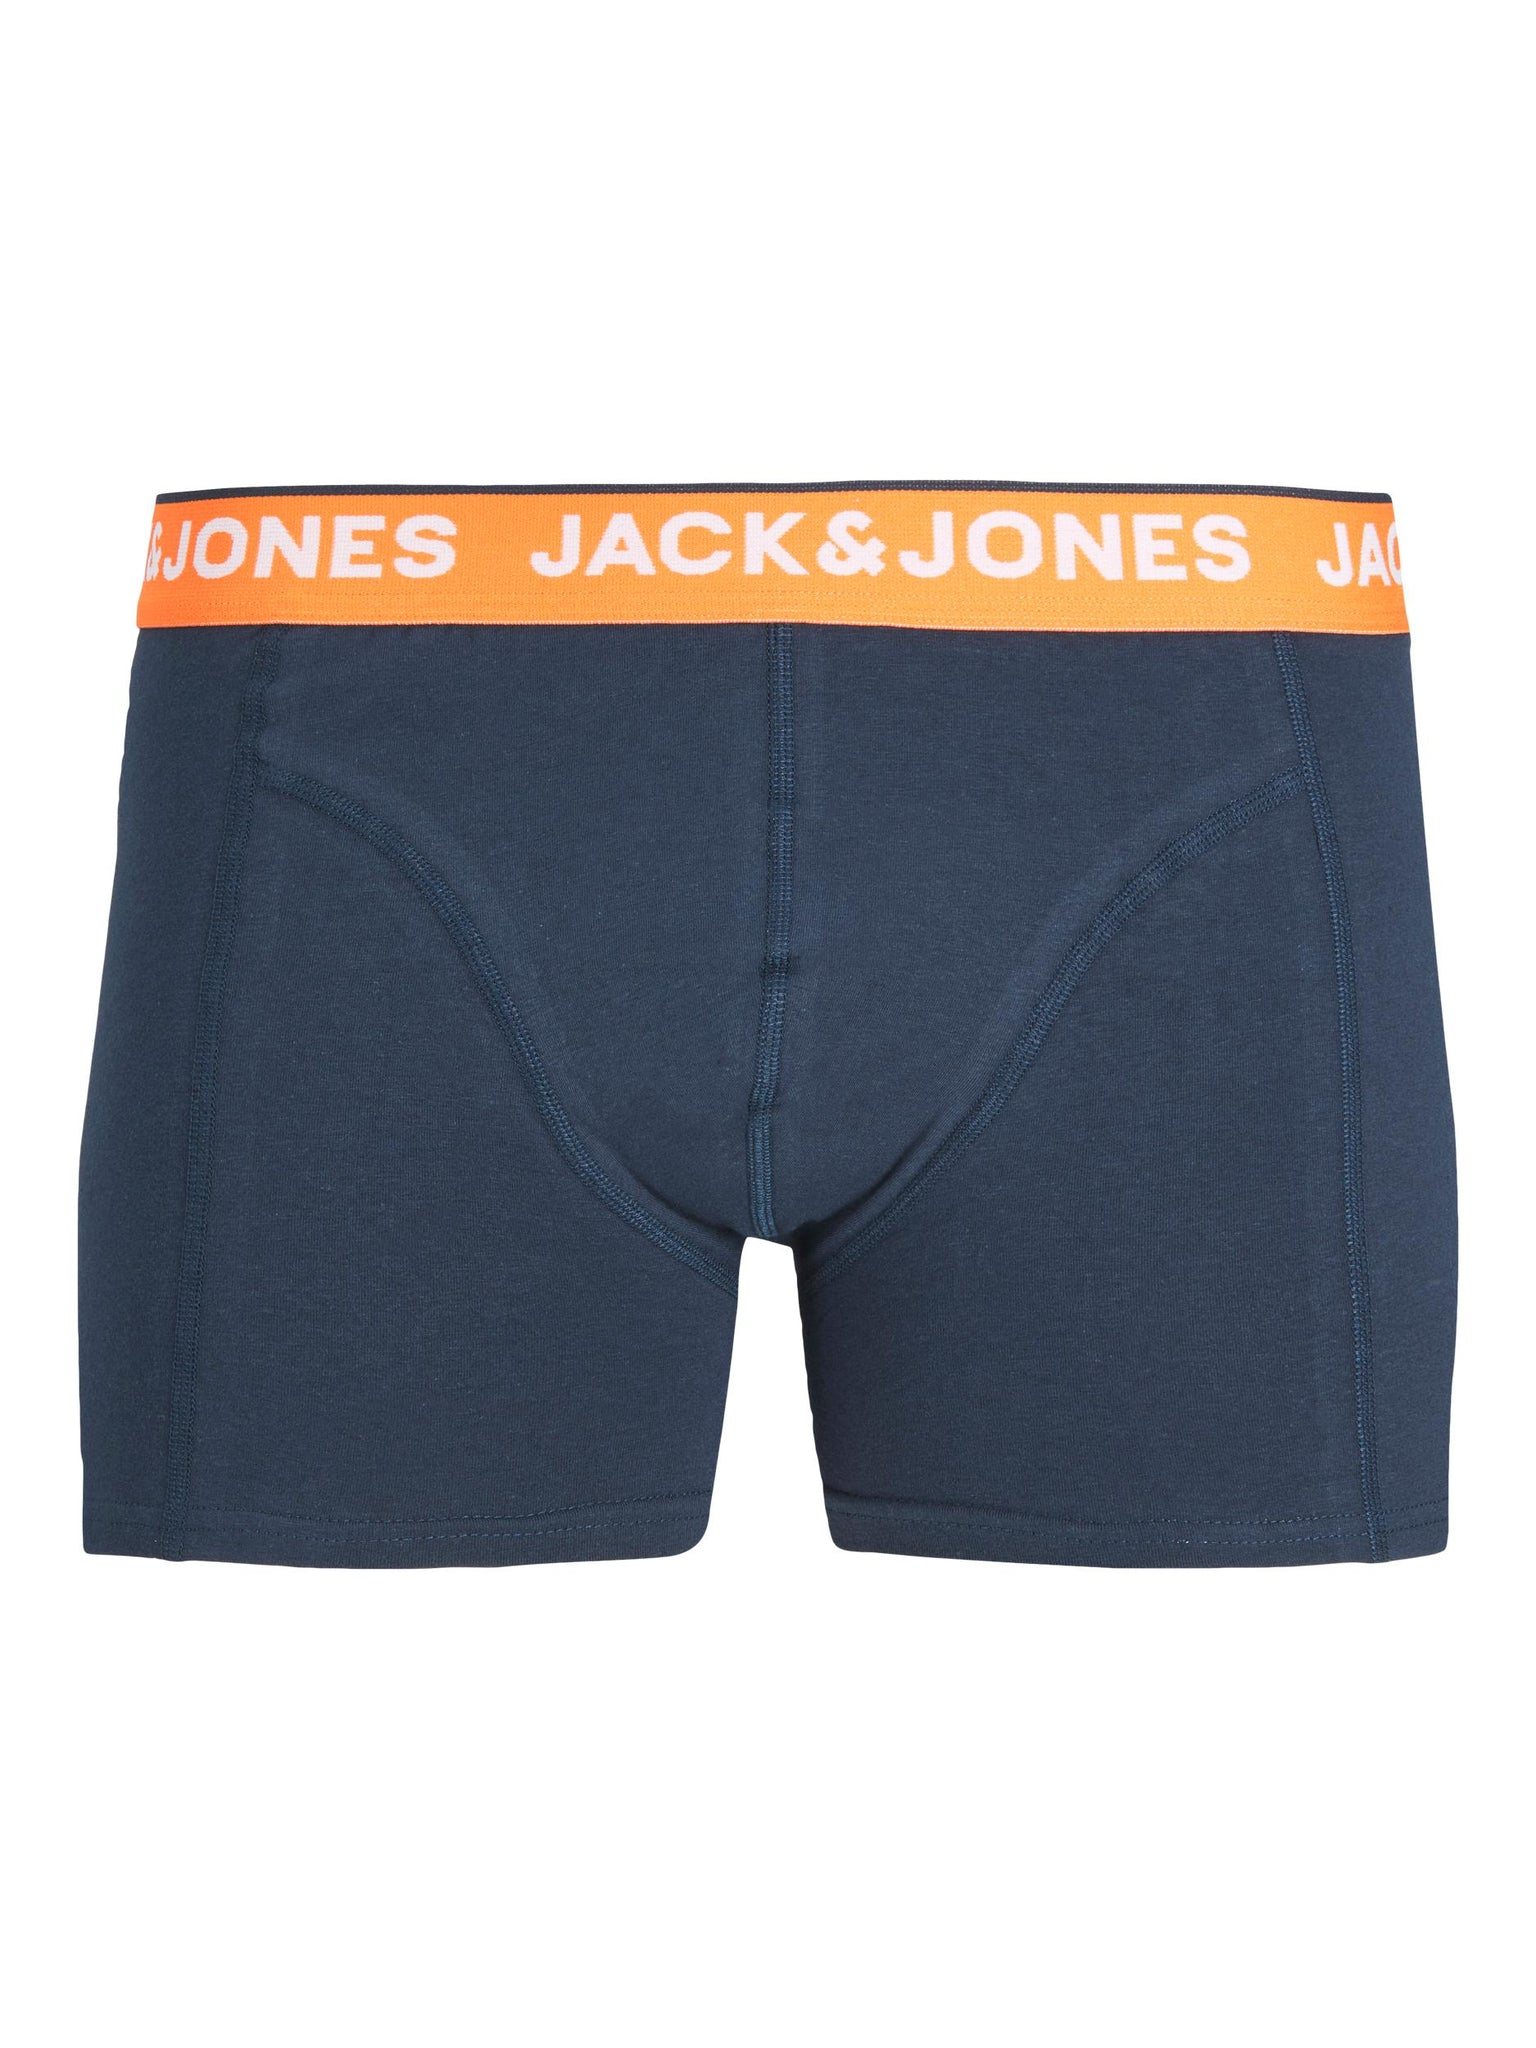 Trunks Jack &amp; Jones Tropical Flower Navy Orange